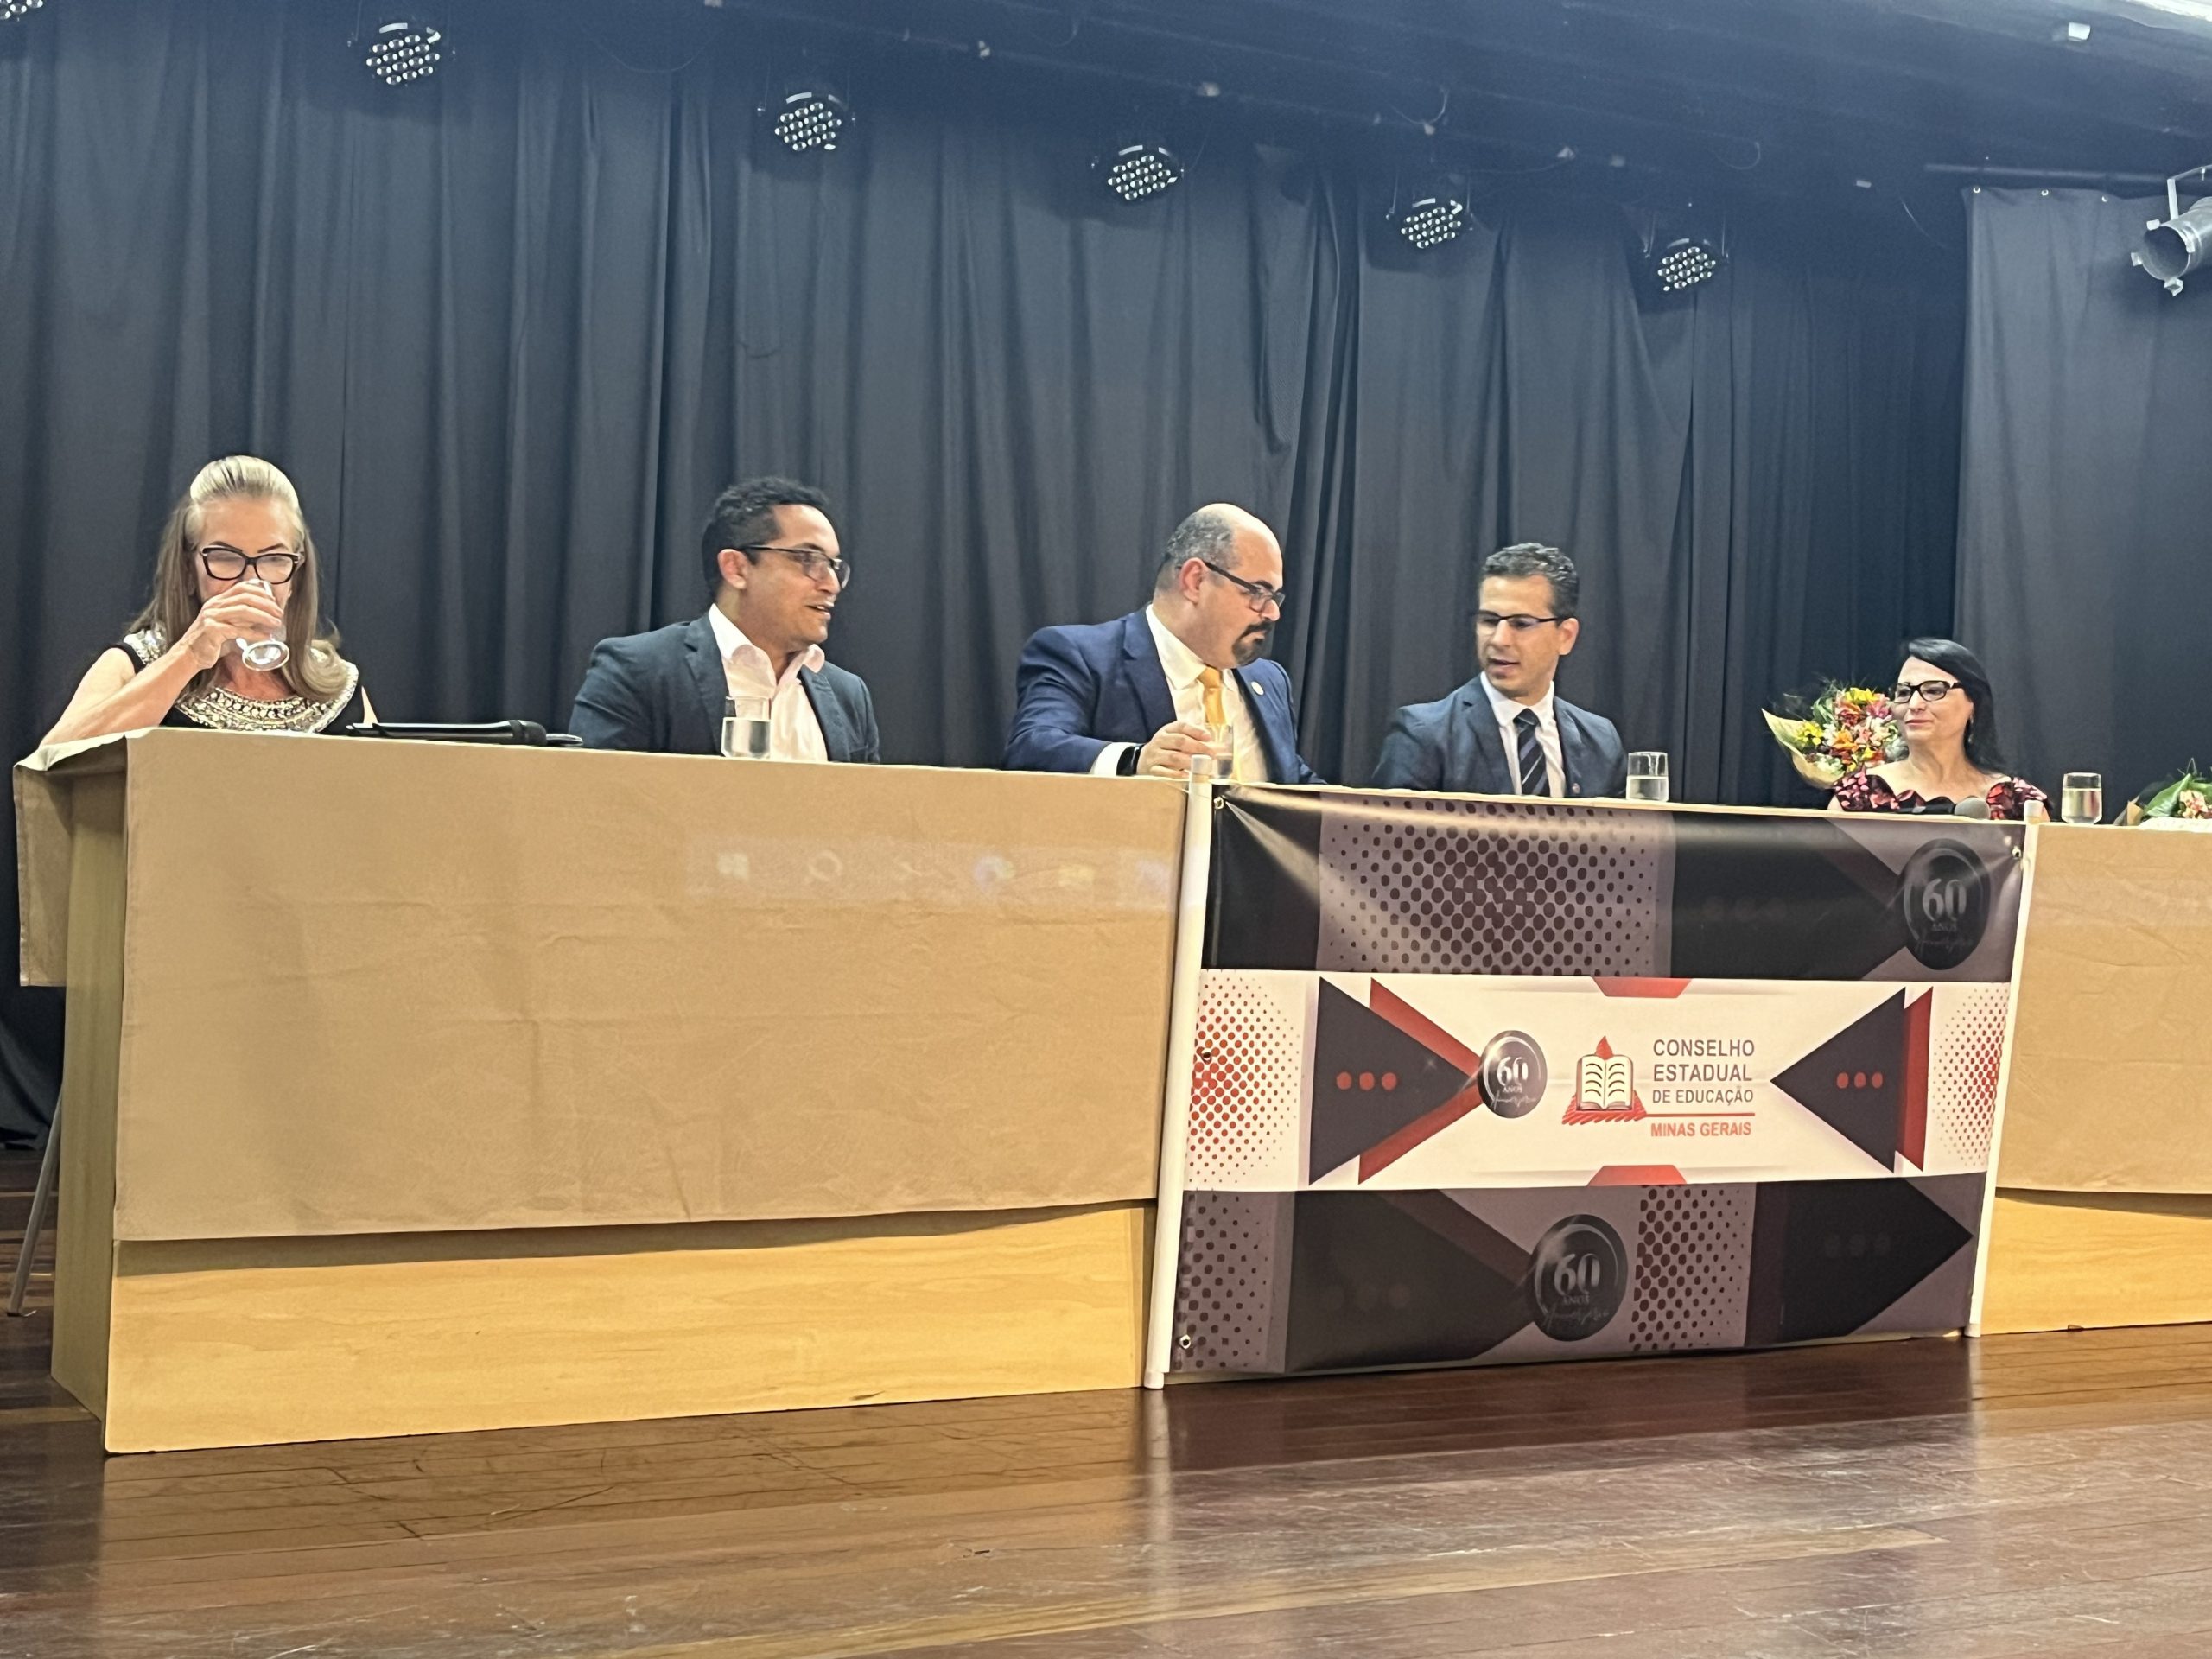 Governo de Minas participa da comemoração pelos 60 anos do Conselho Estadual de Educação